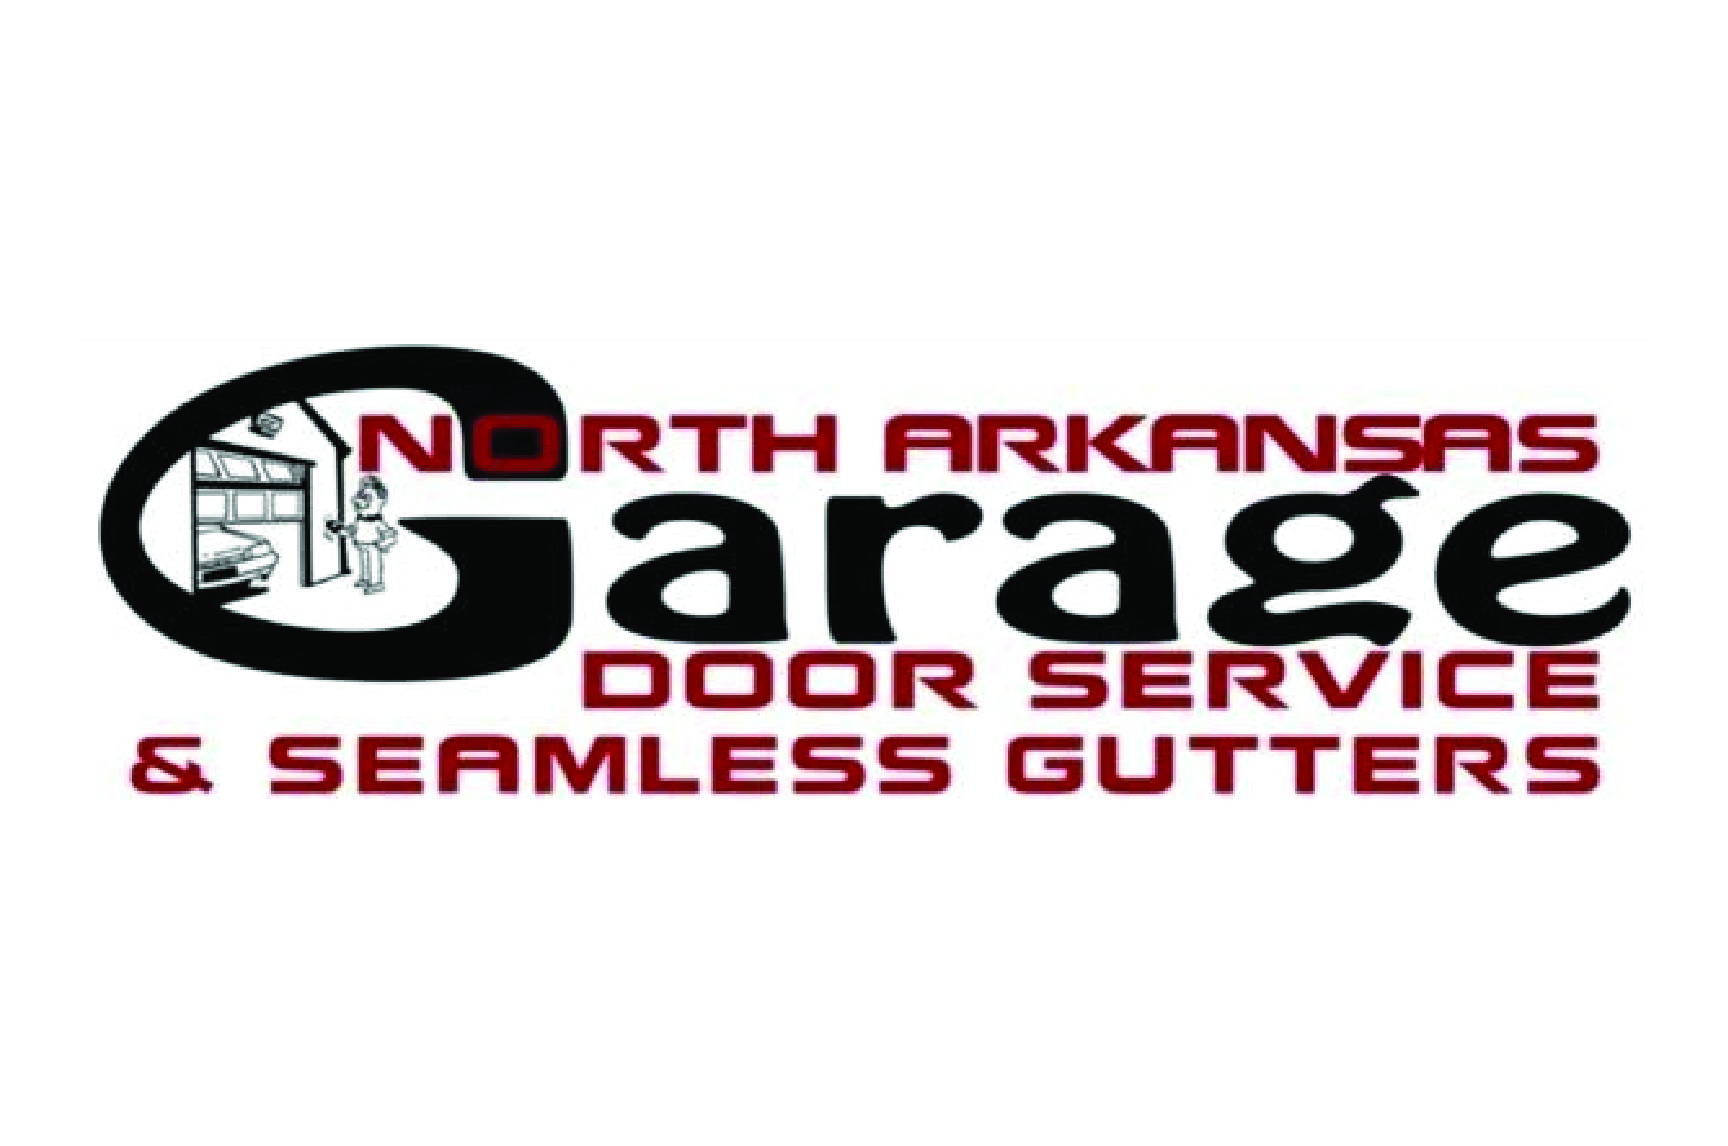 North Arkansas Garage Door logo old